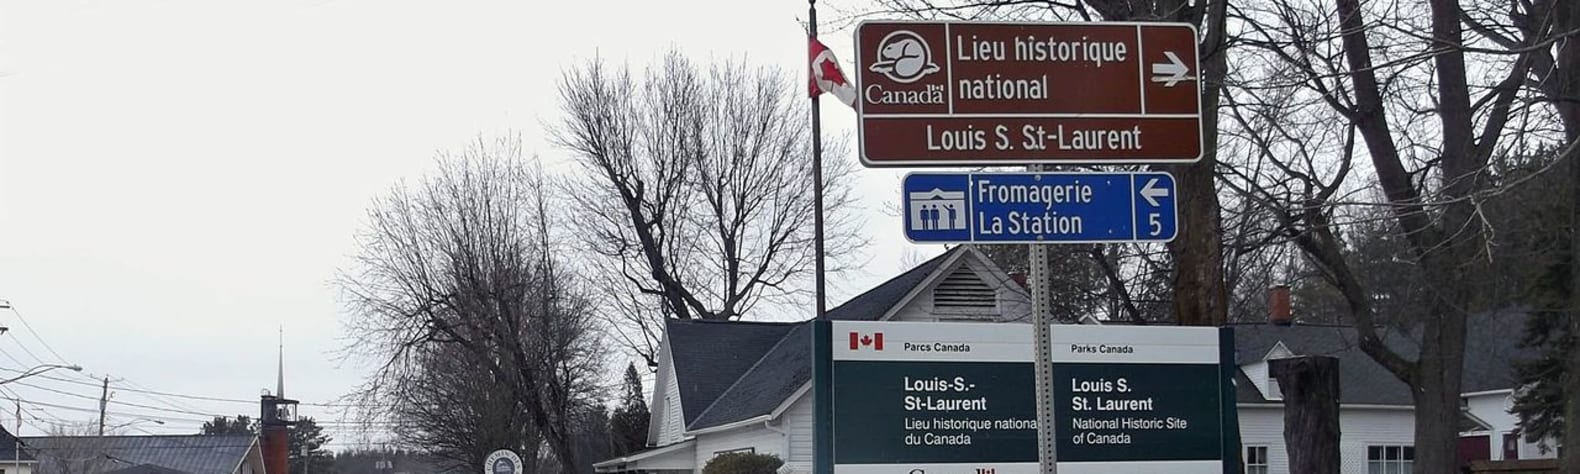 Louis S. St-Laurent National Historic Site